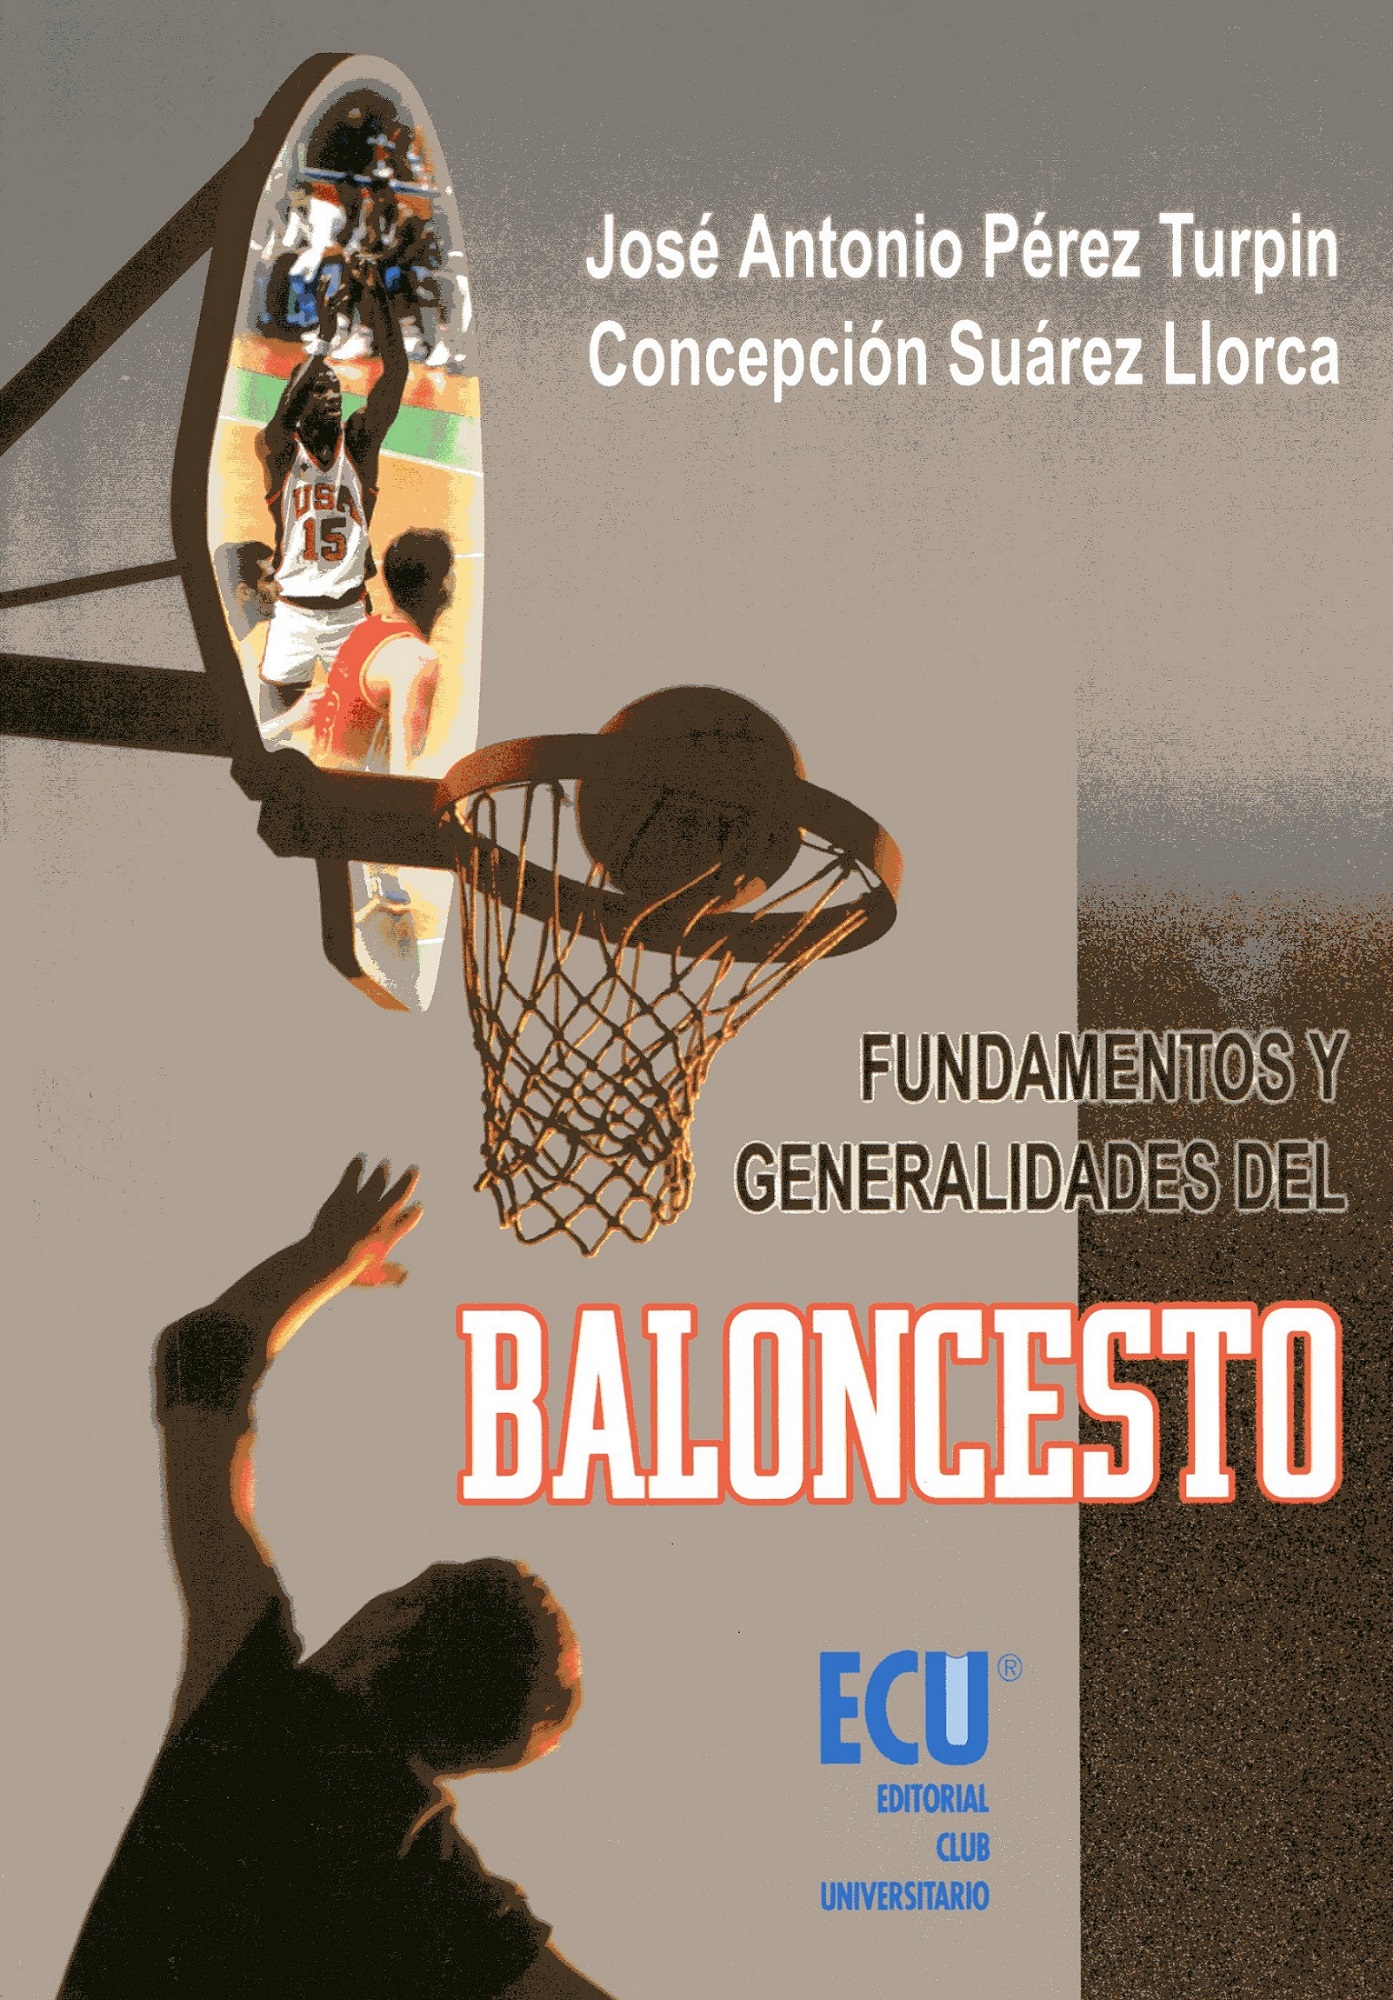 Fundamentos y generalidades del baloncesto - Dialnet